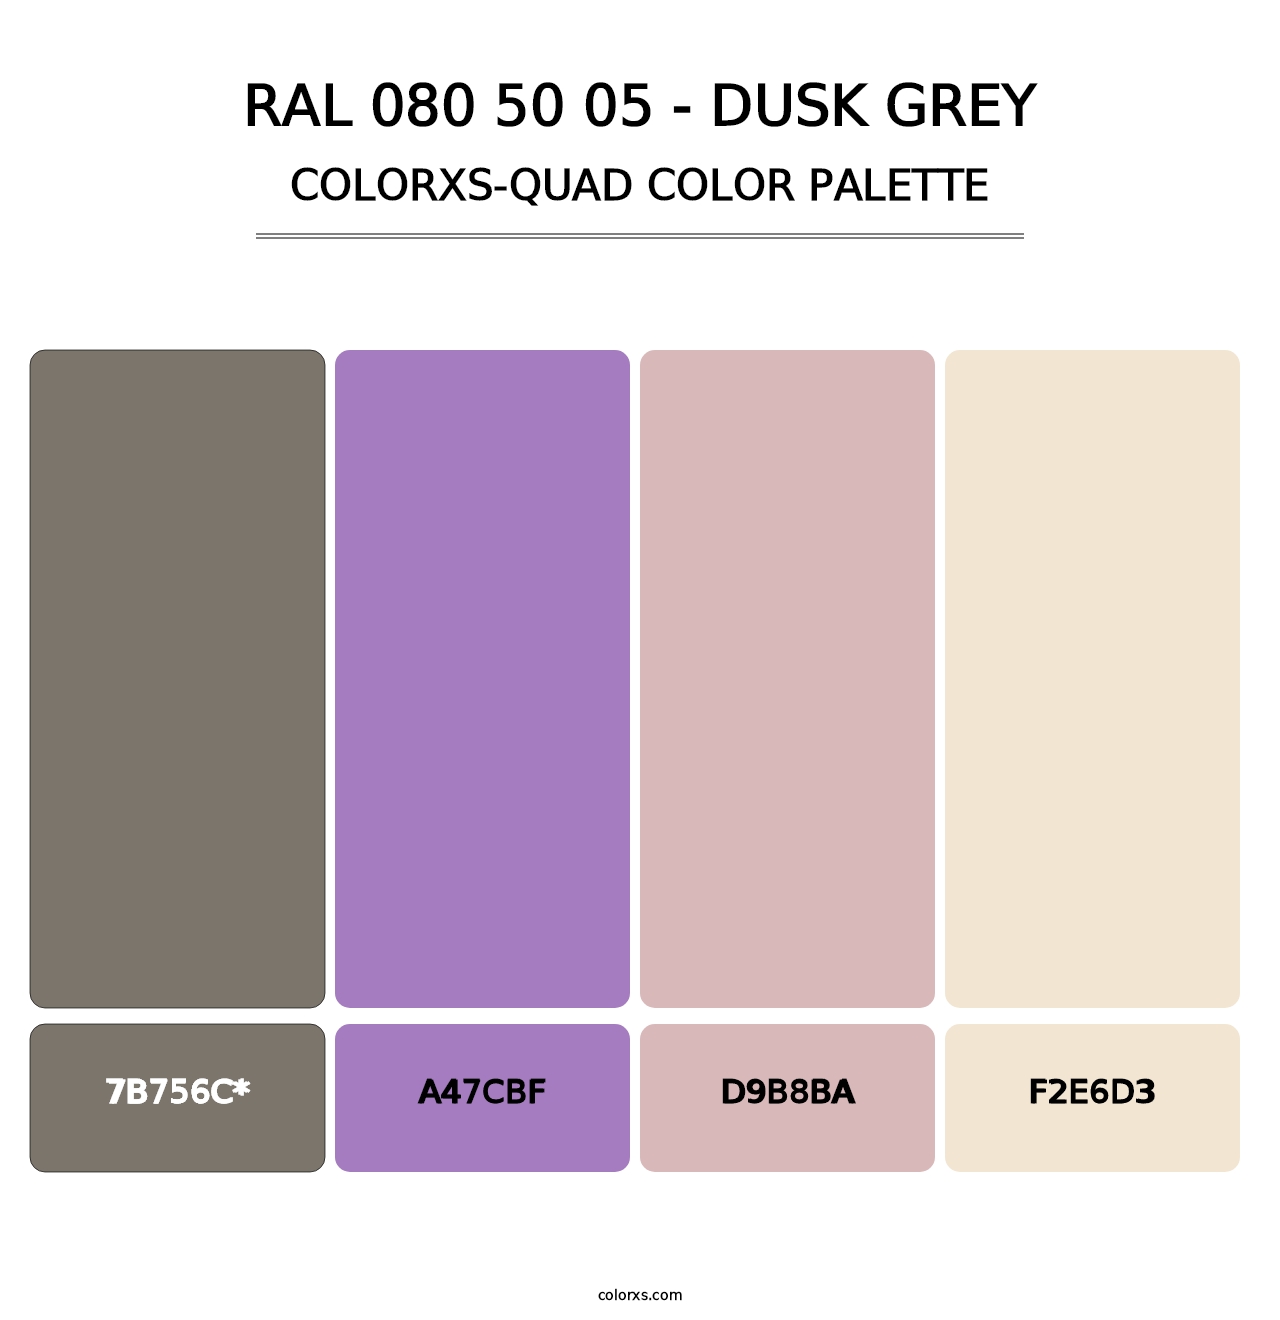 RAL 080 50 05 - Dusk Grey - Colorxs Quad Palette